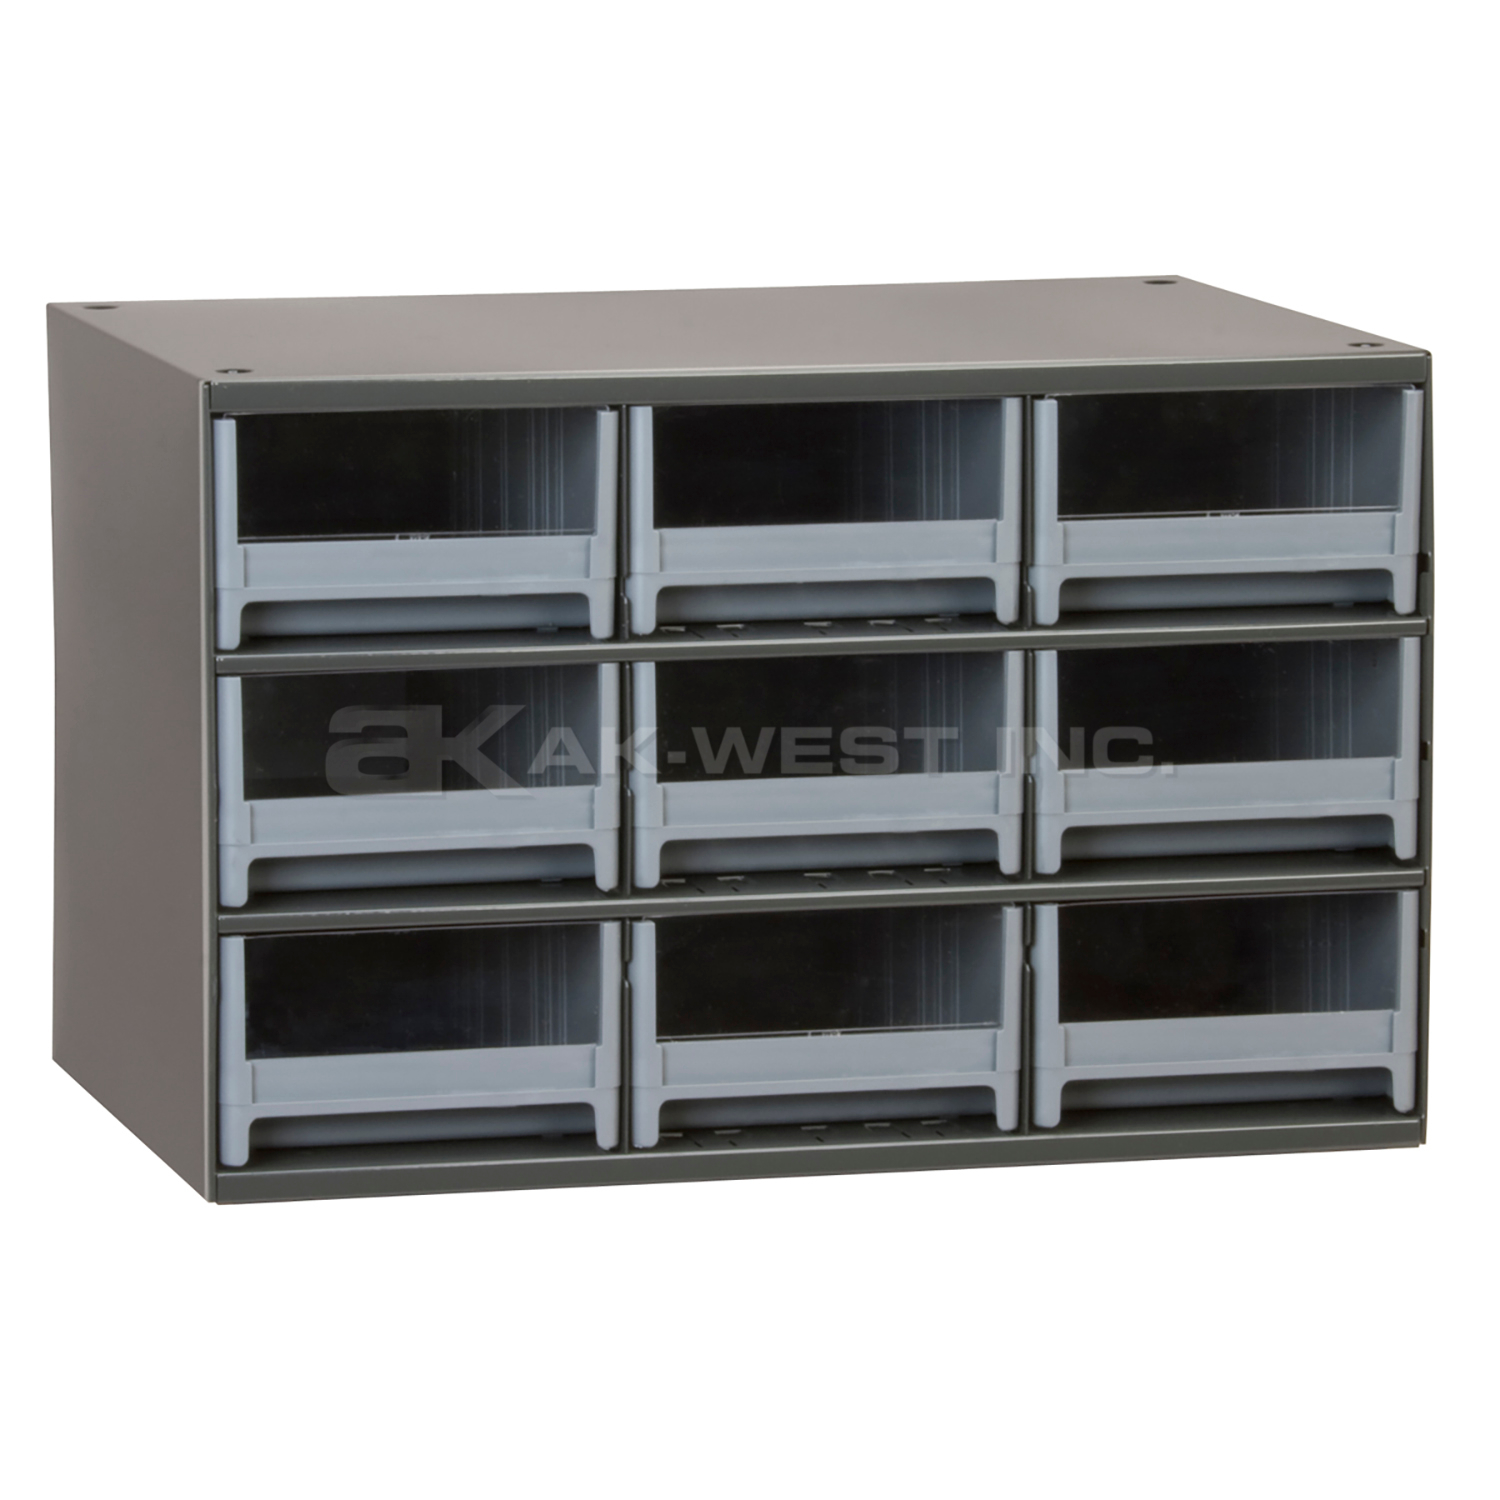 Grey, 17" x 11" x 11" Steel Modular Cabinet w/ 9 Drawers - Drawer Size 5-3/16" x 3-1/16" x 10-9/16"